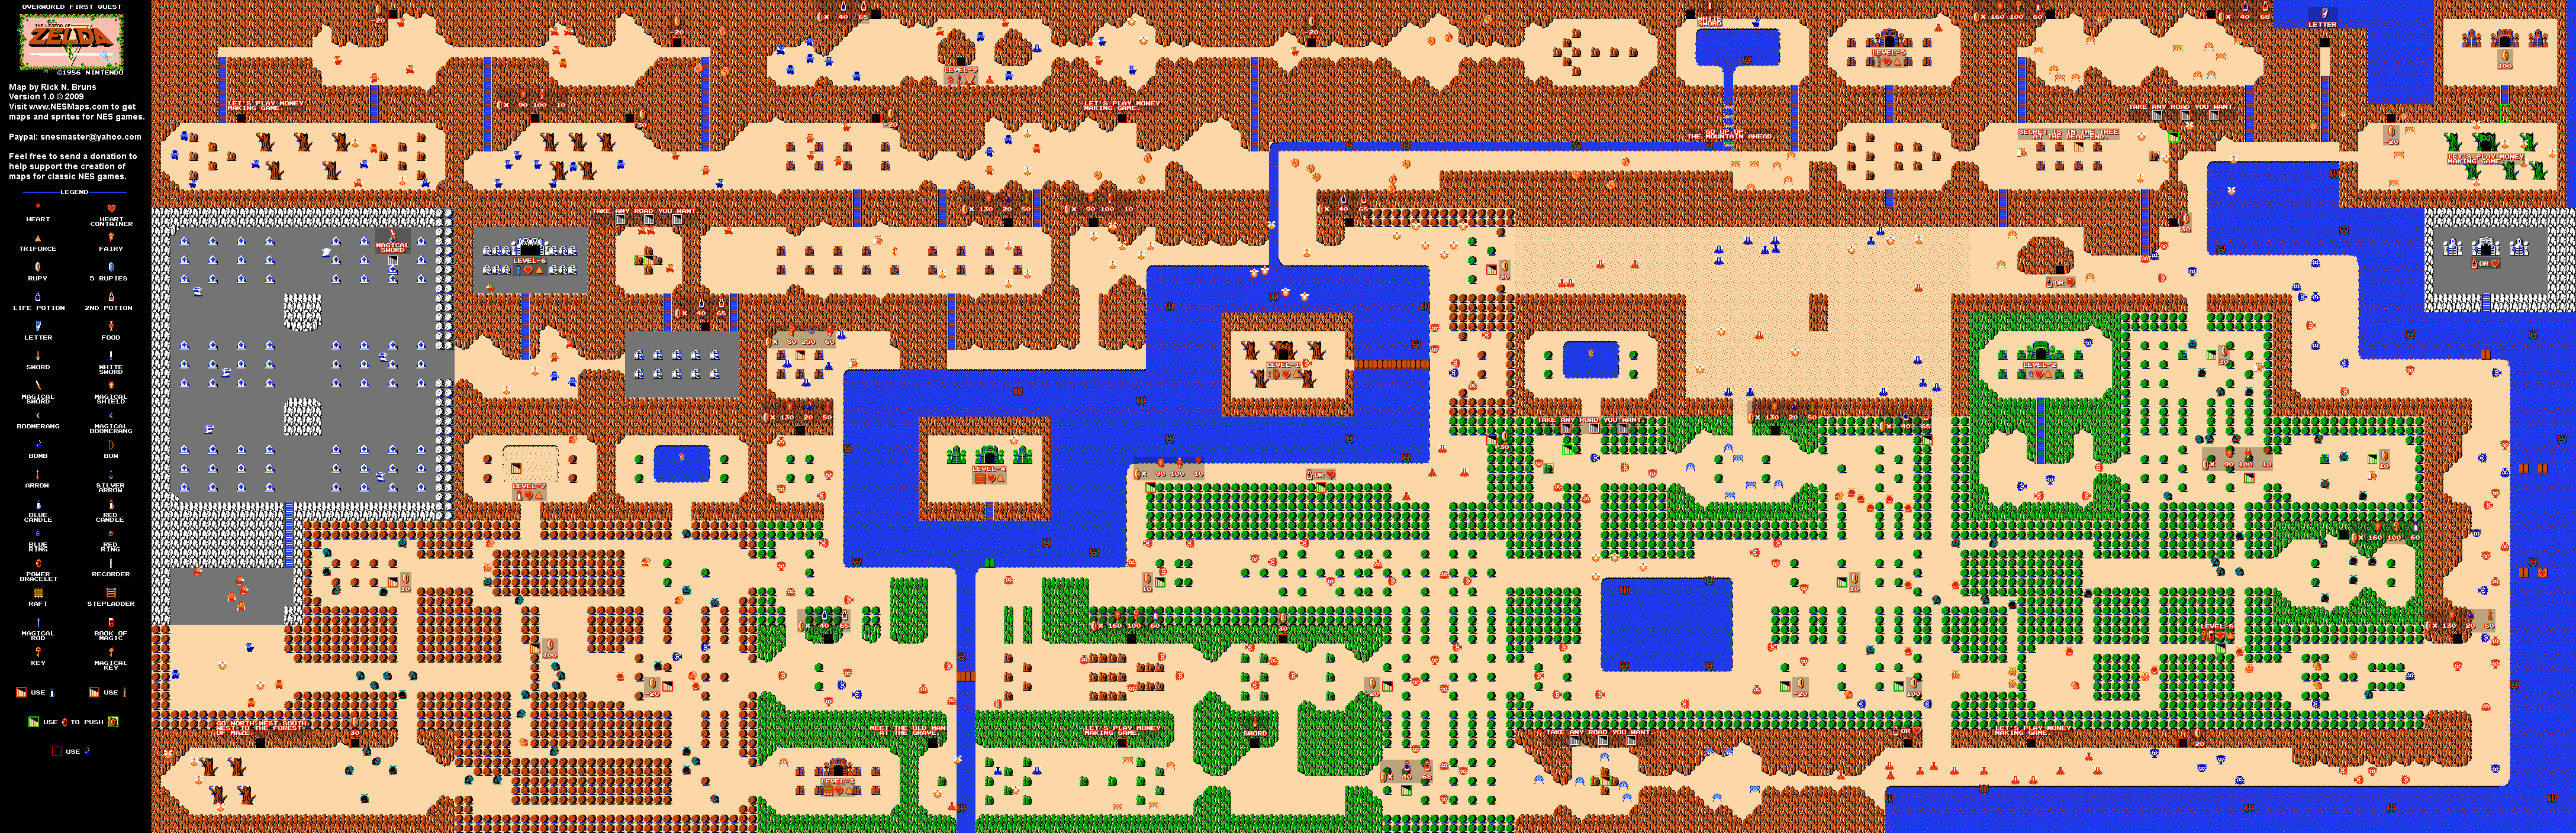 Video Game The Legend Of Zelda 4352x1408